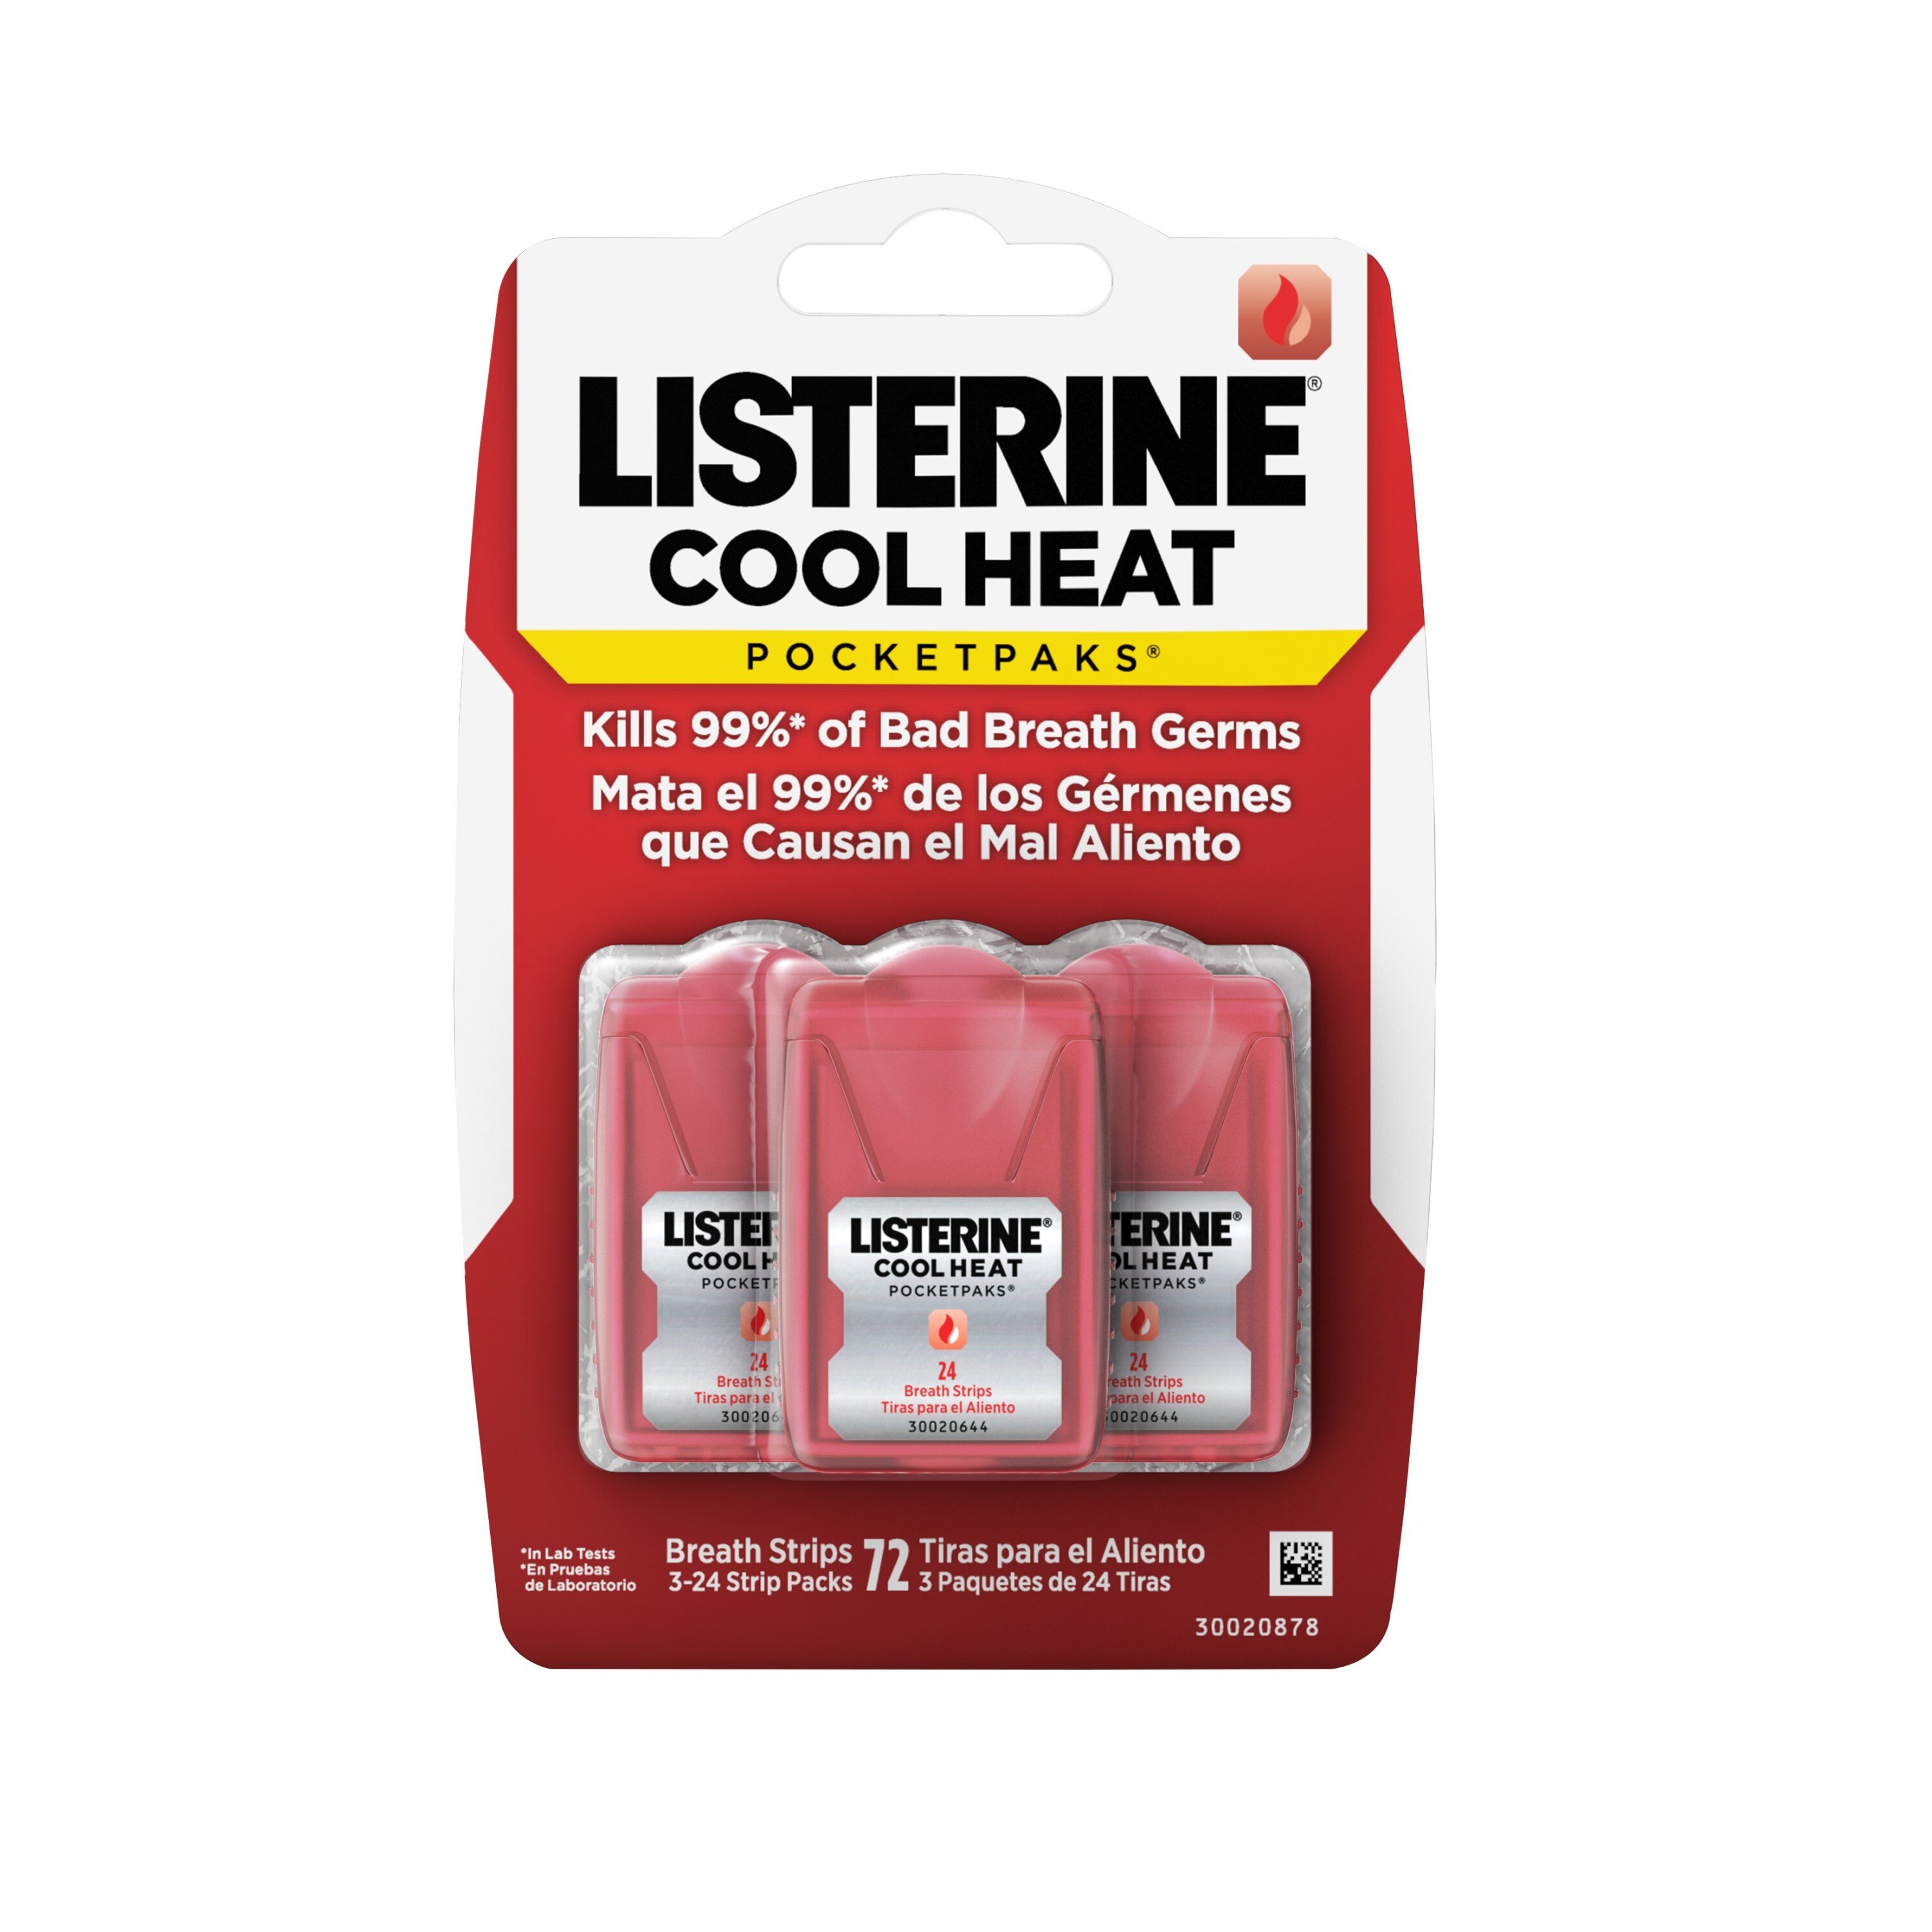 Listerine Cool Heat Pocketpaks Breath Strips, 24-Strip Pack, 3 Pack